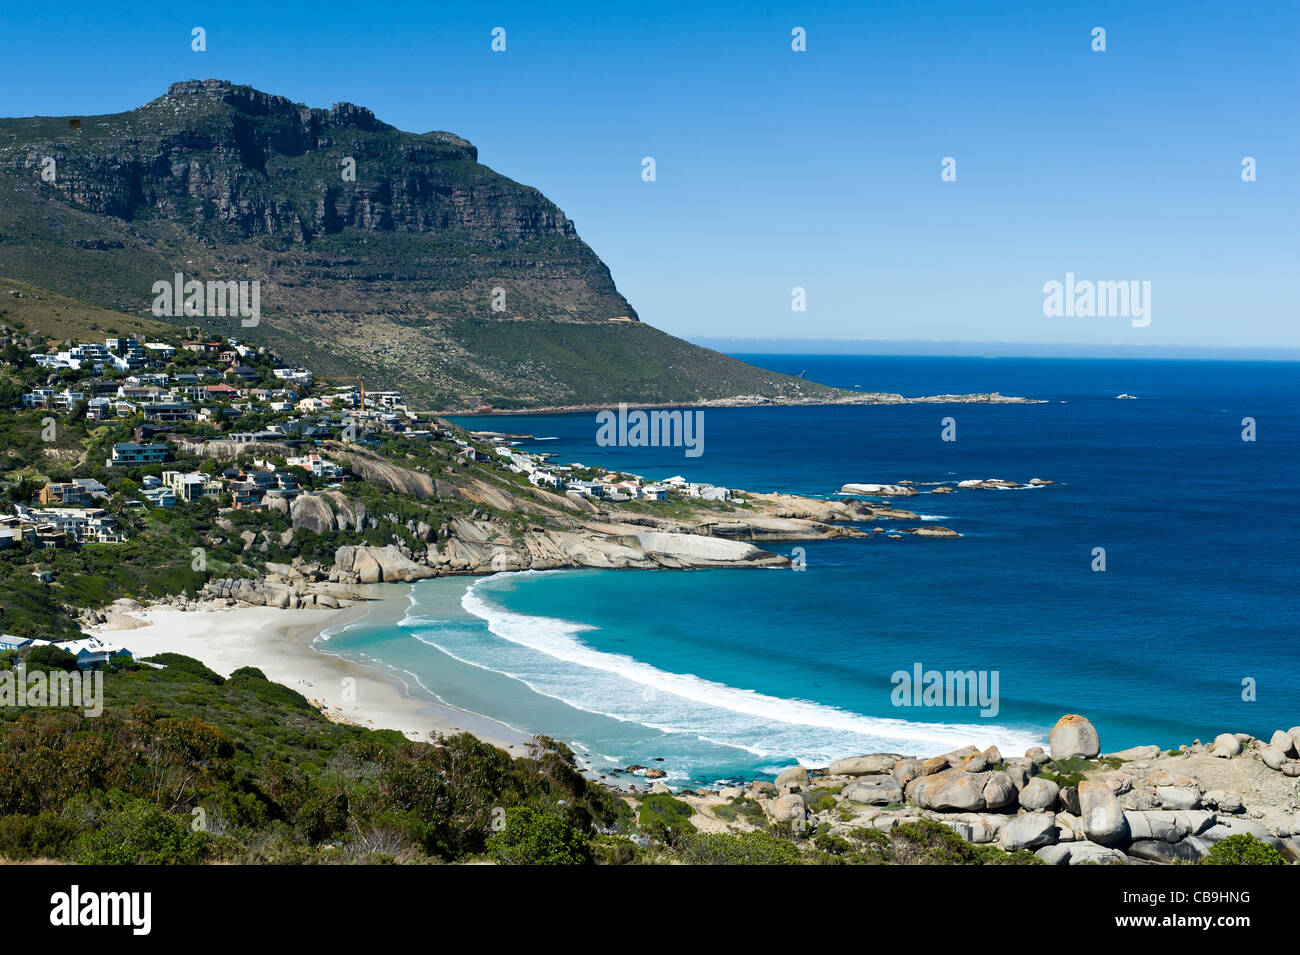 La baie de Llandudno et résidentiel au sud de Cape Town Afrique du Sud Banque D'Images